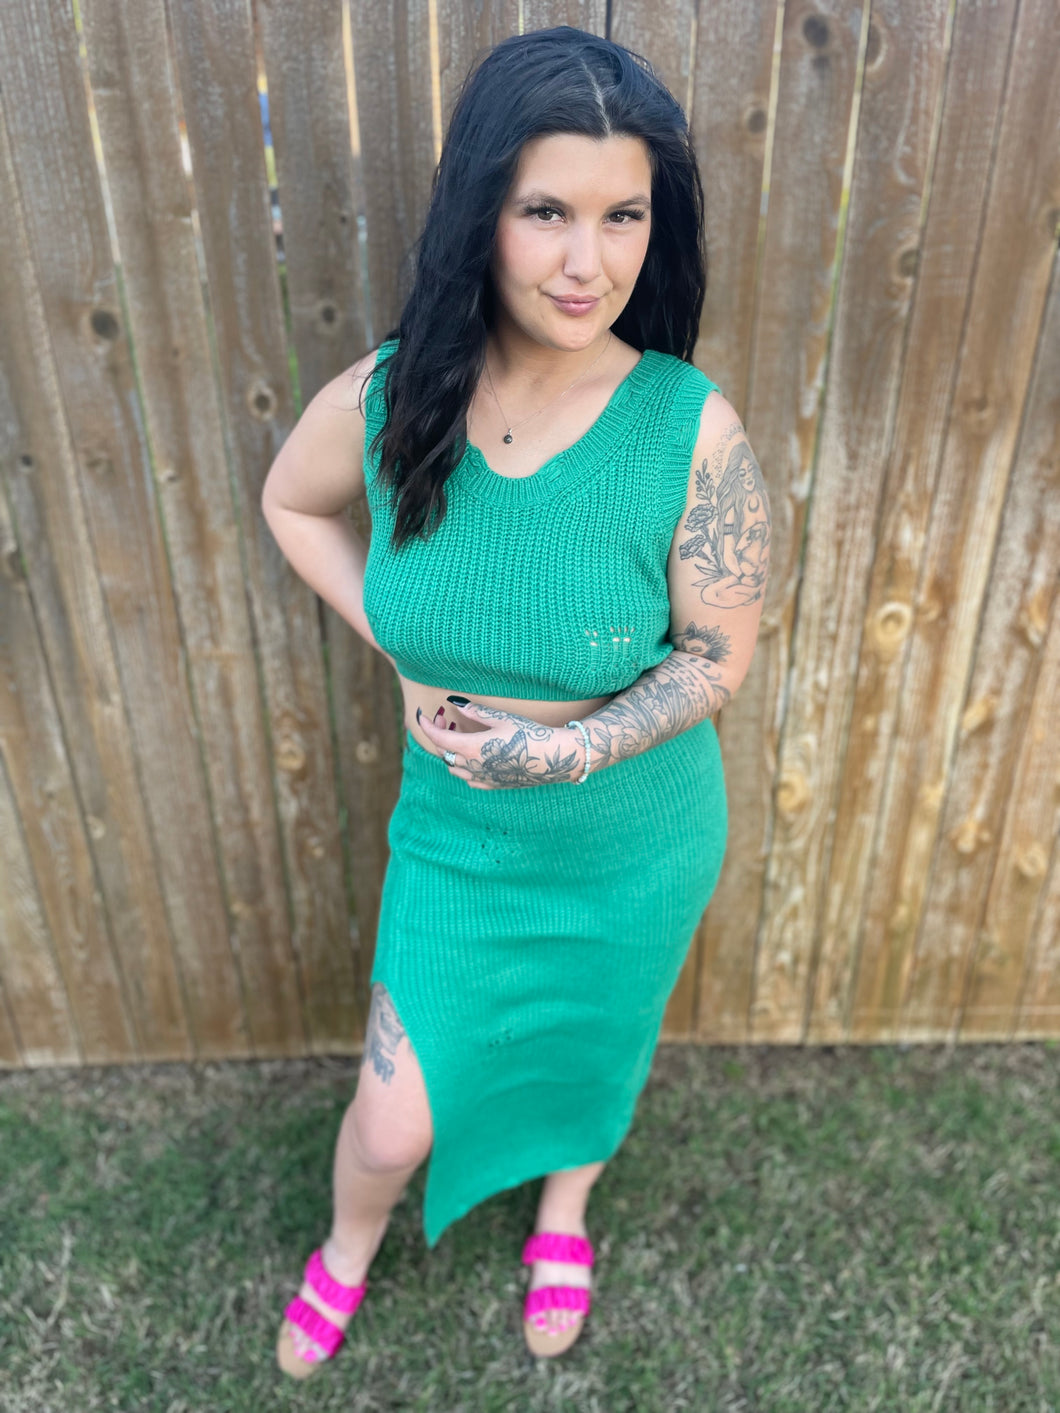 Kelly green skirt (match g1)